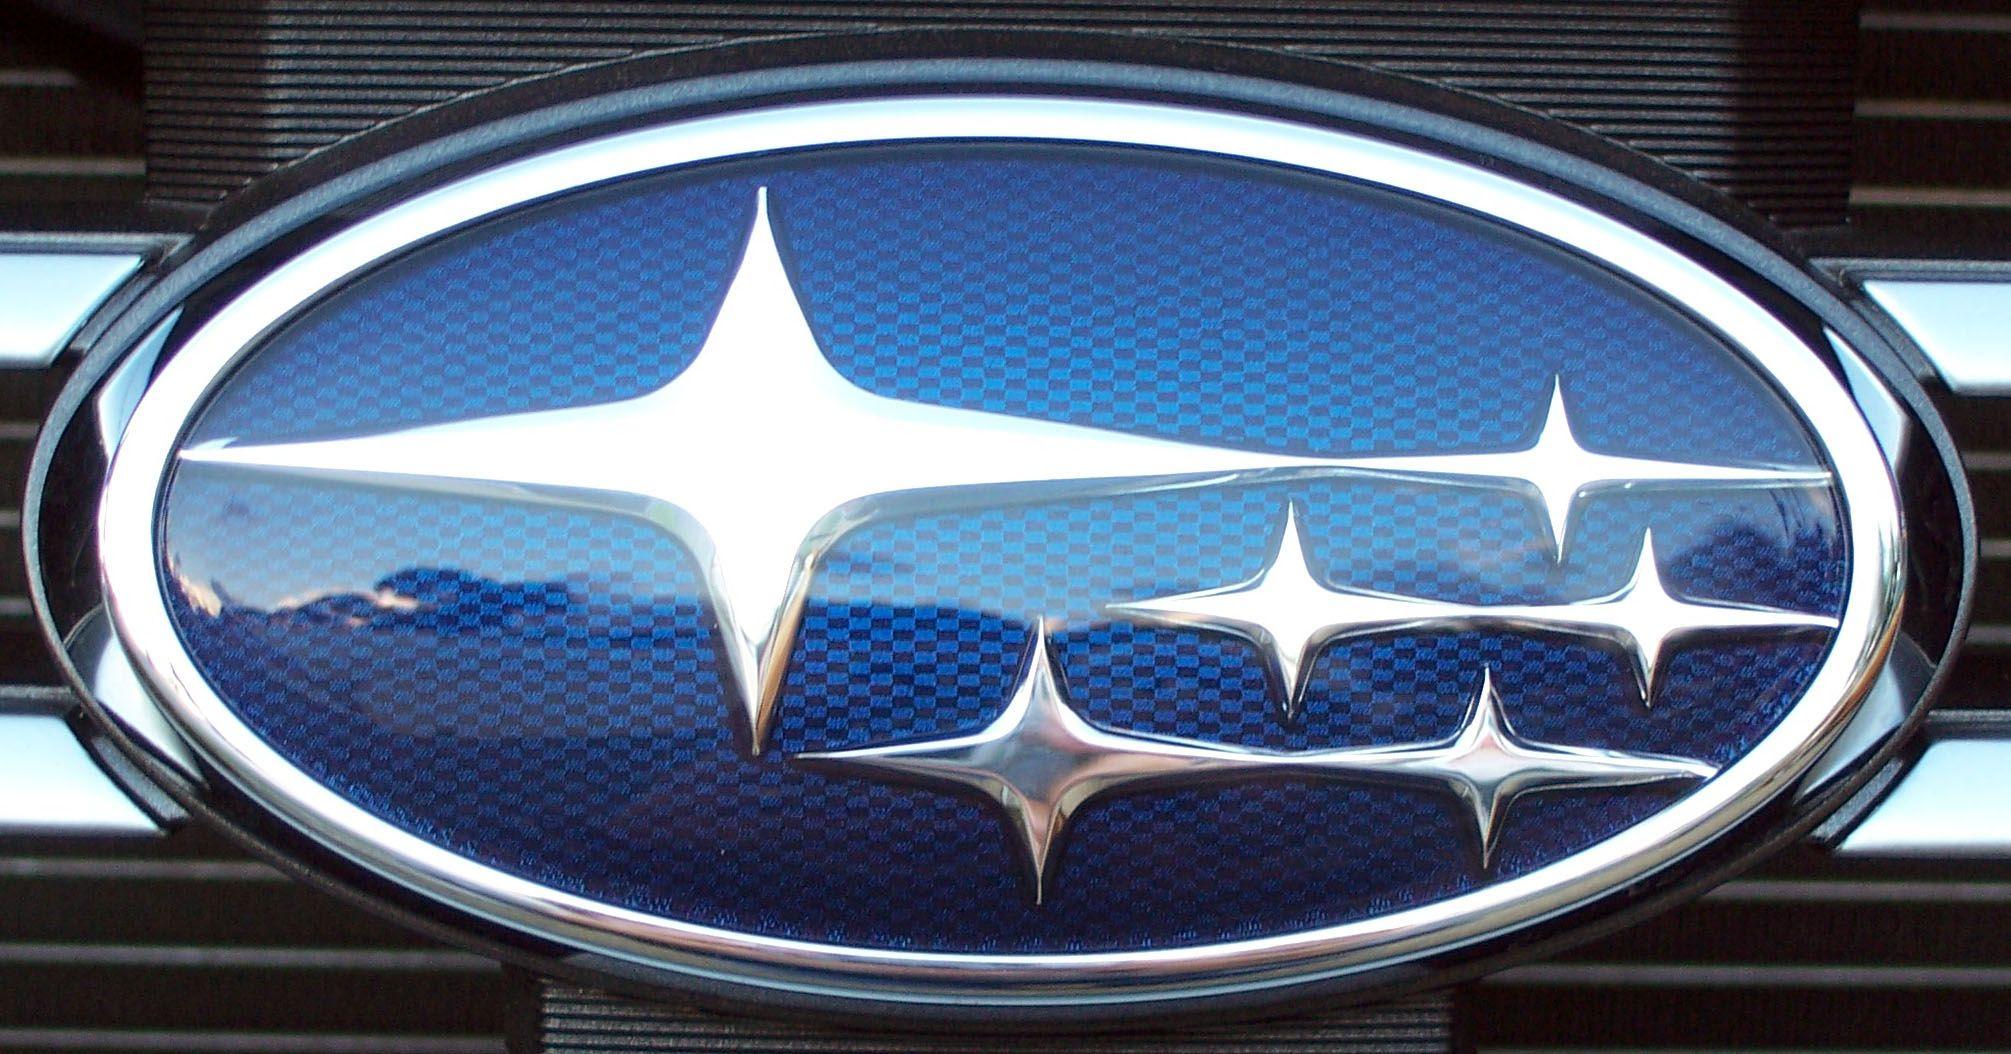 Star Automobile Logo - Subaru Logo, Subaru Car Symbol Meaning and History | Car Brand Names.com